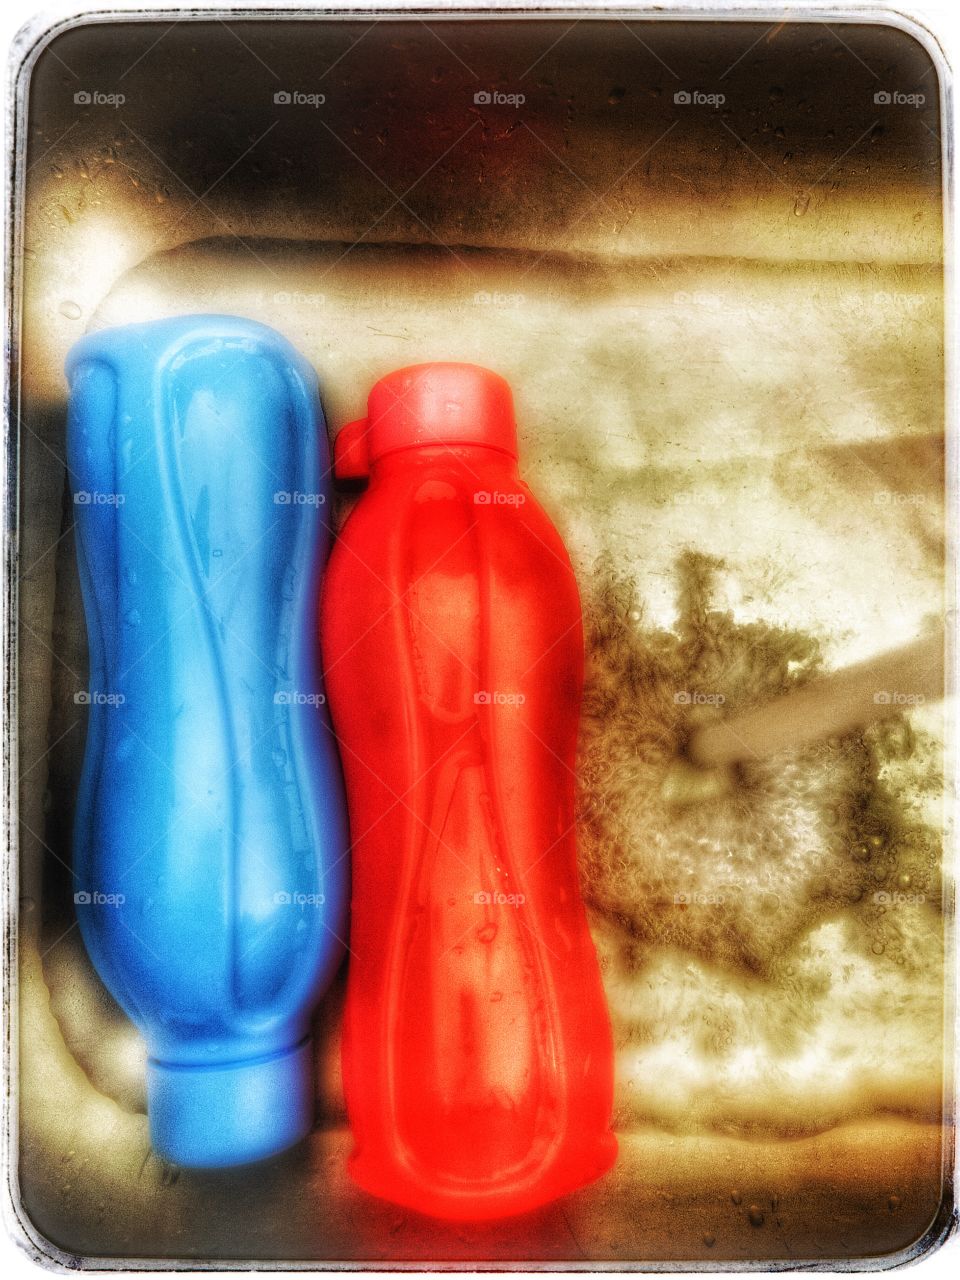 Dos botellas siendo lavadas, nada más simple ni minimalista.. 